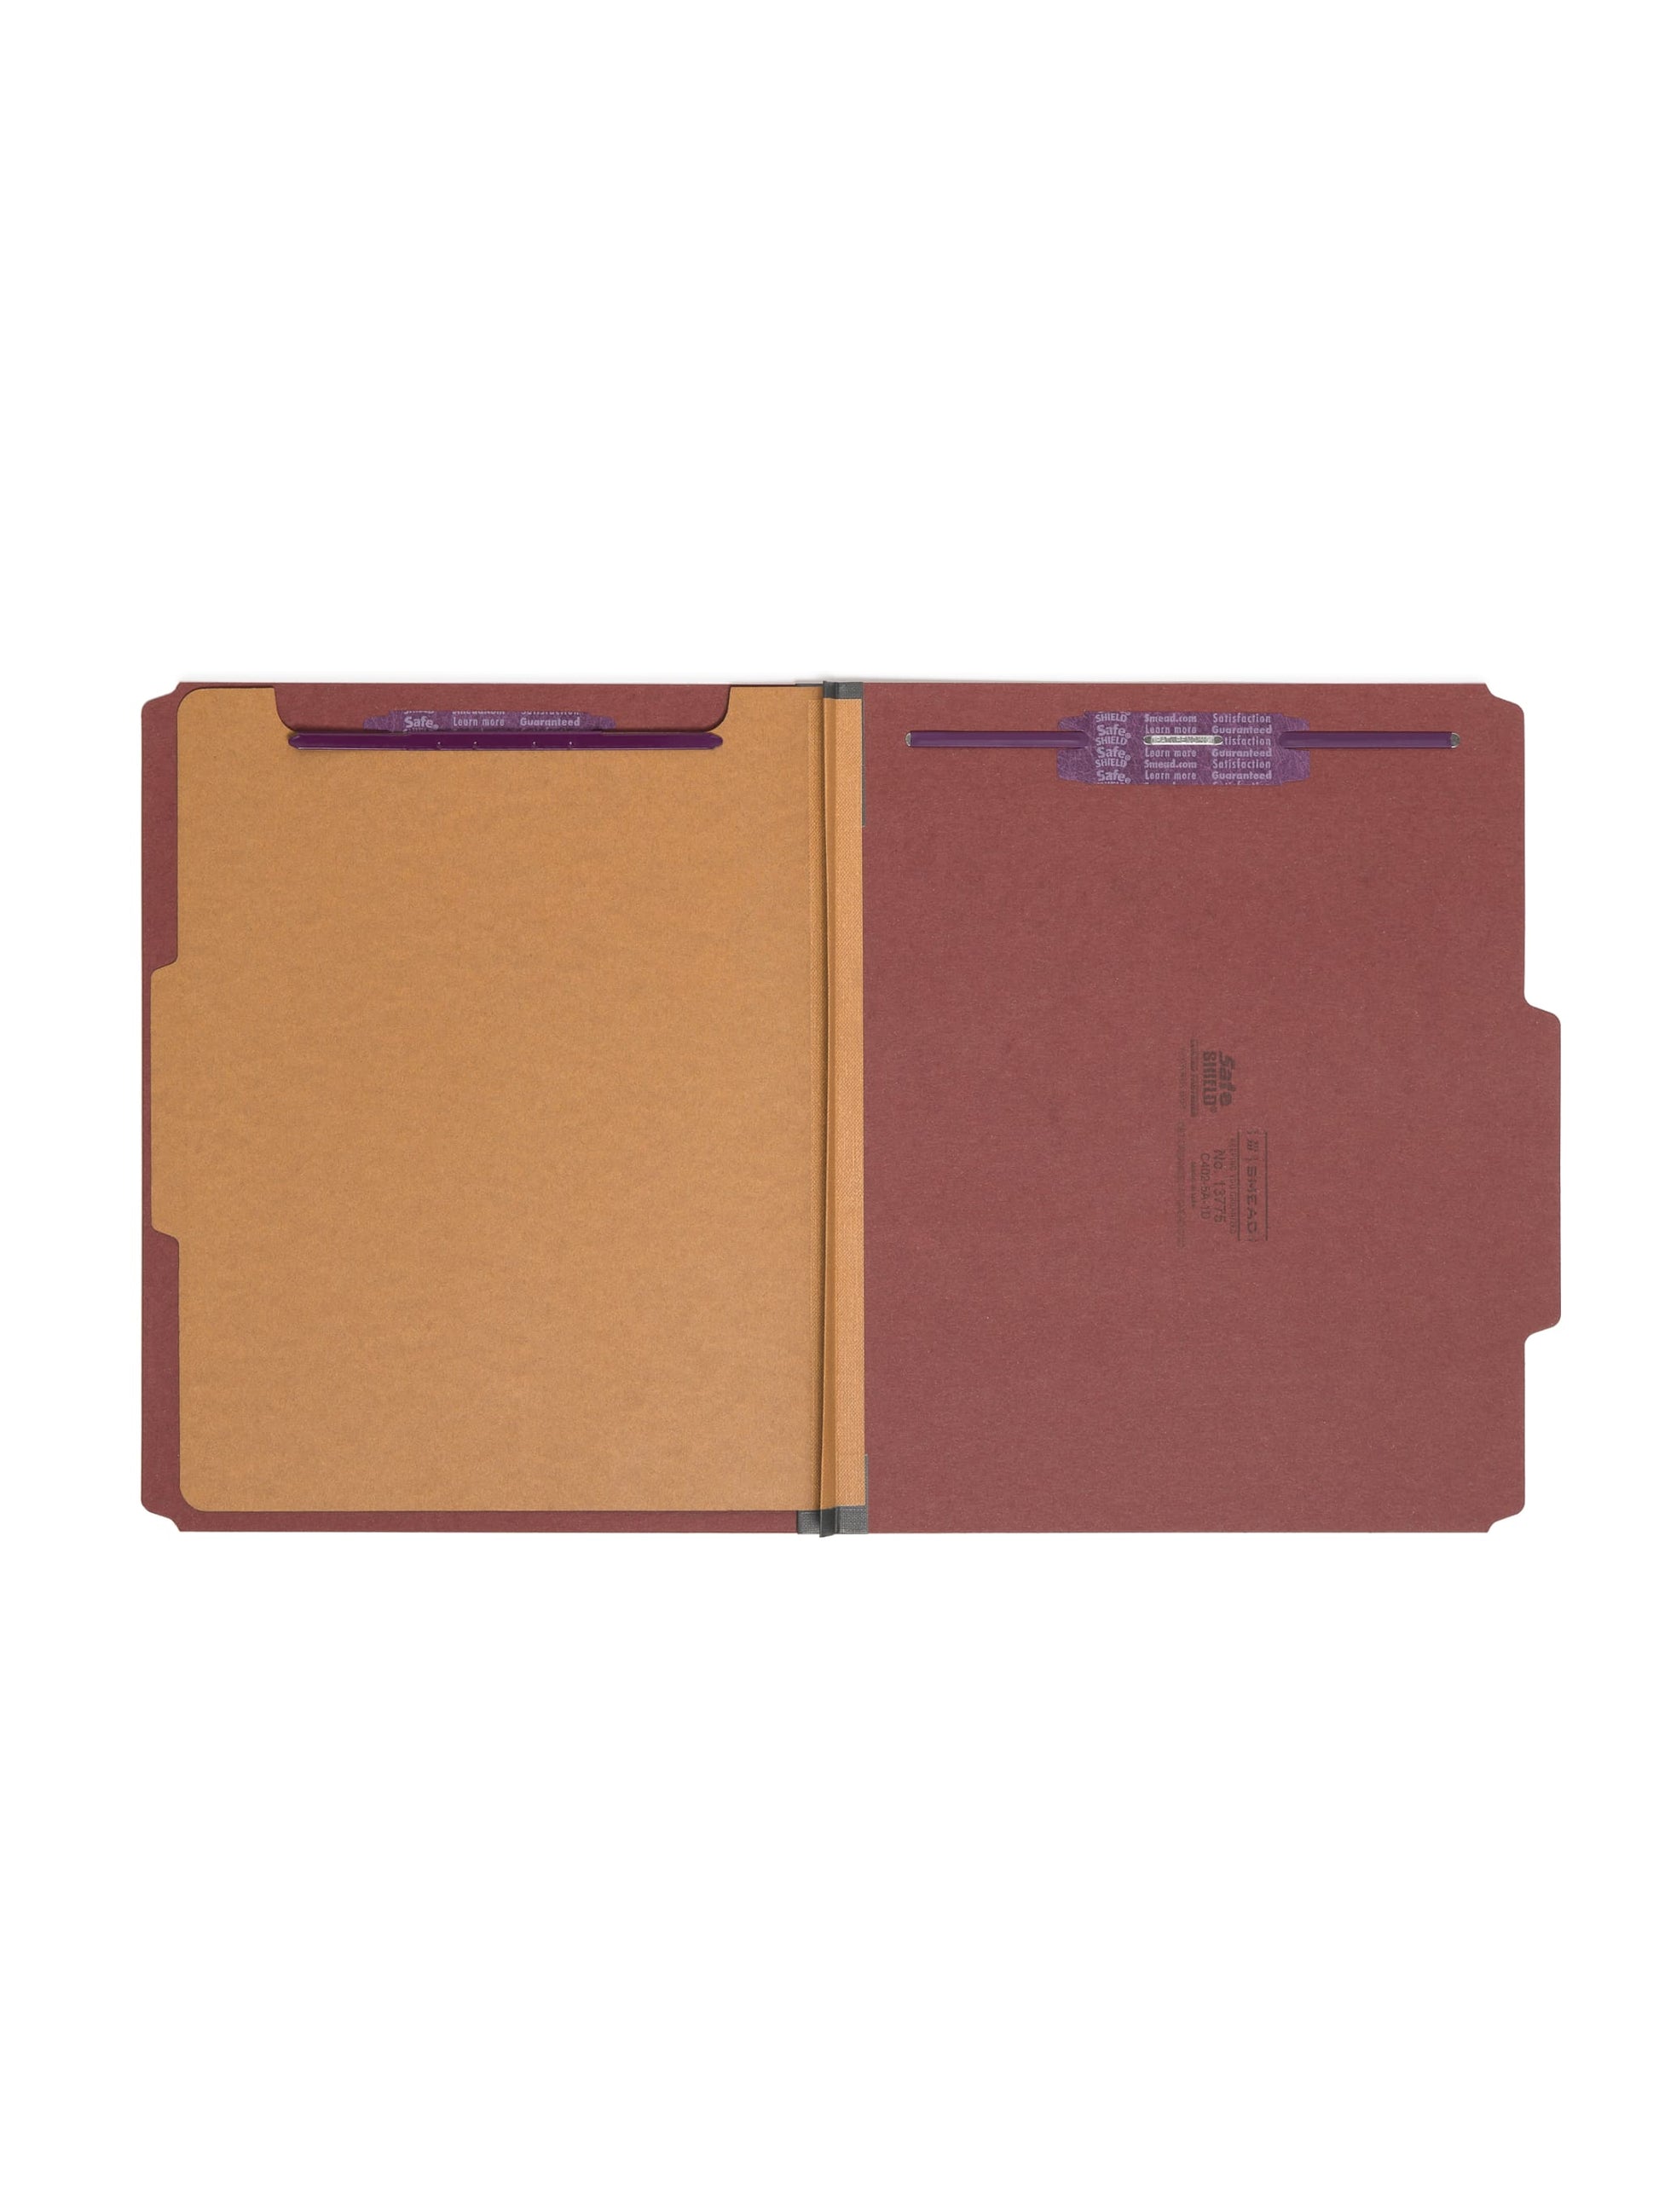 SafeSHIELD® Pressboard Classification File Folders, 1 Divider, 2 inch Expansion, Red Color, Letter Size, Set of 0, 30086486137752